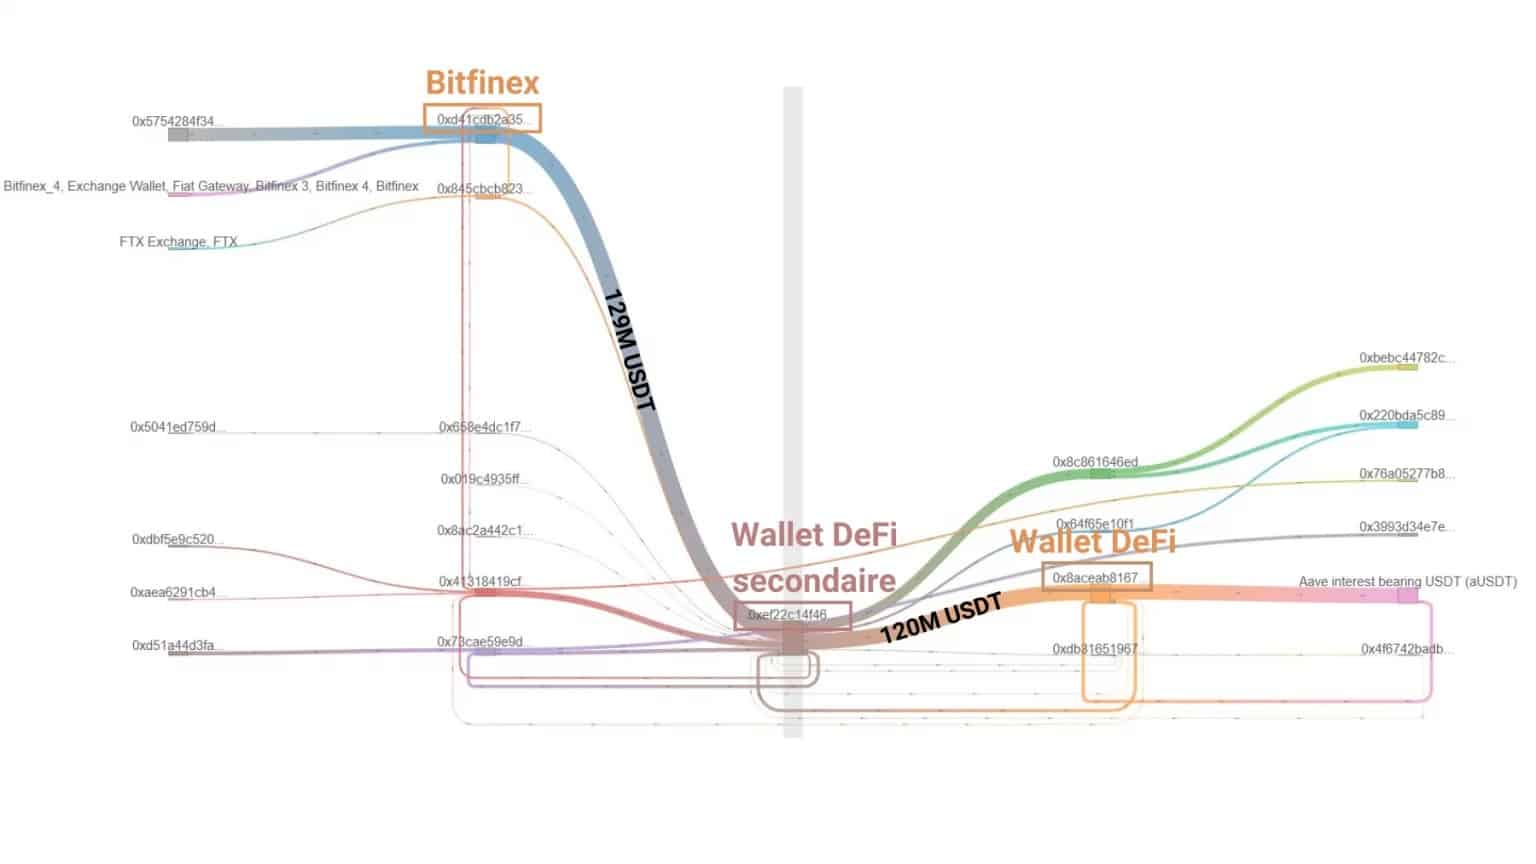 Abbildung 5: Kapitaltransfers von Bitfinex zu Celsius